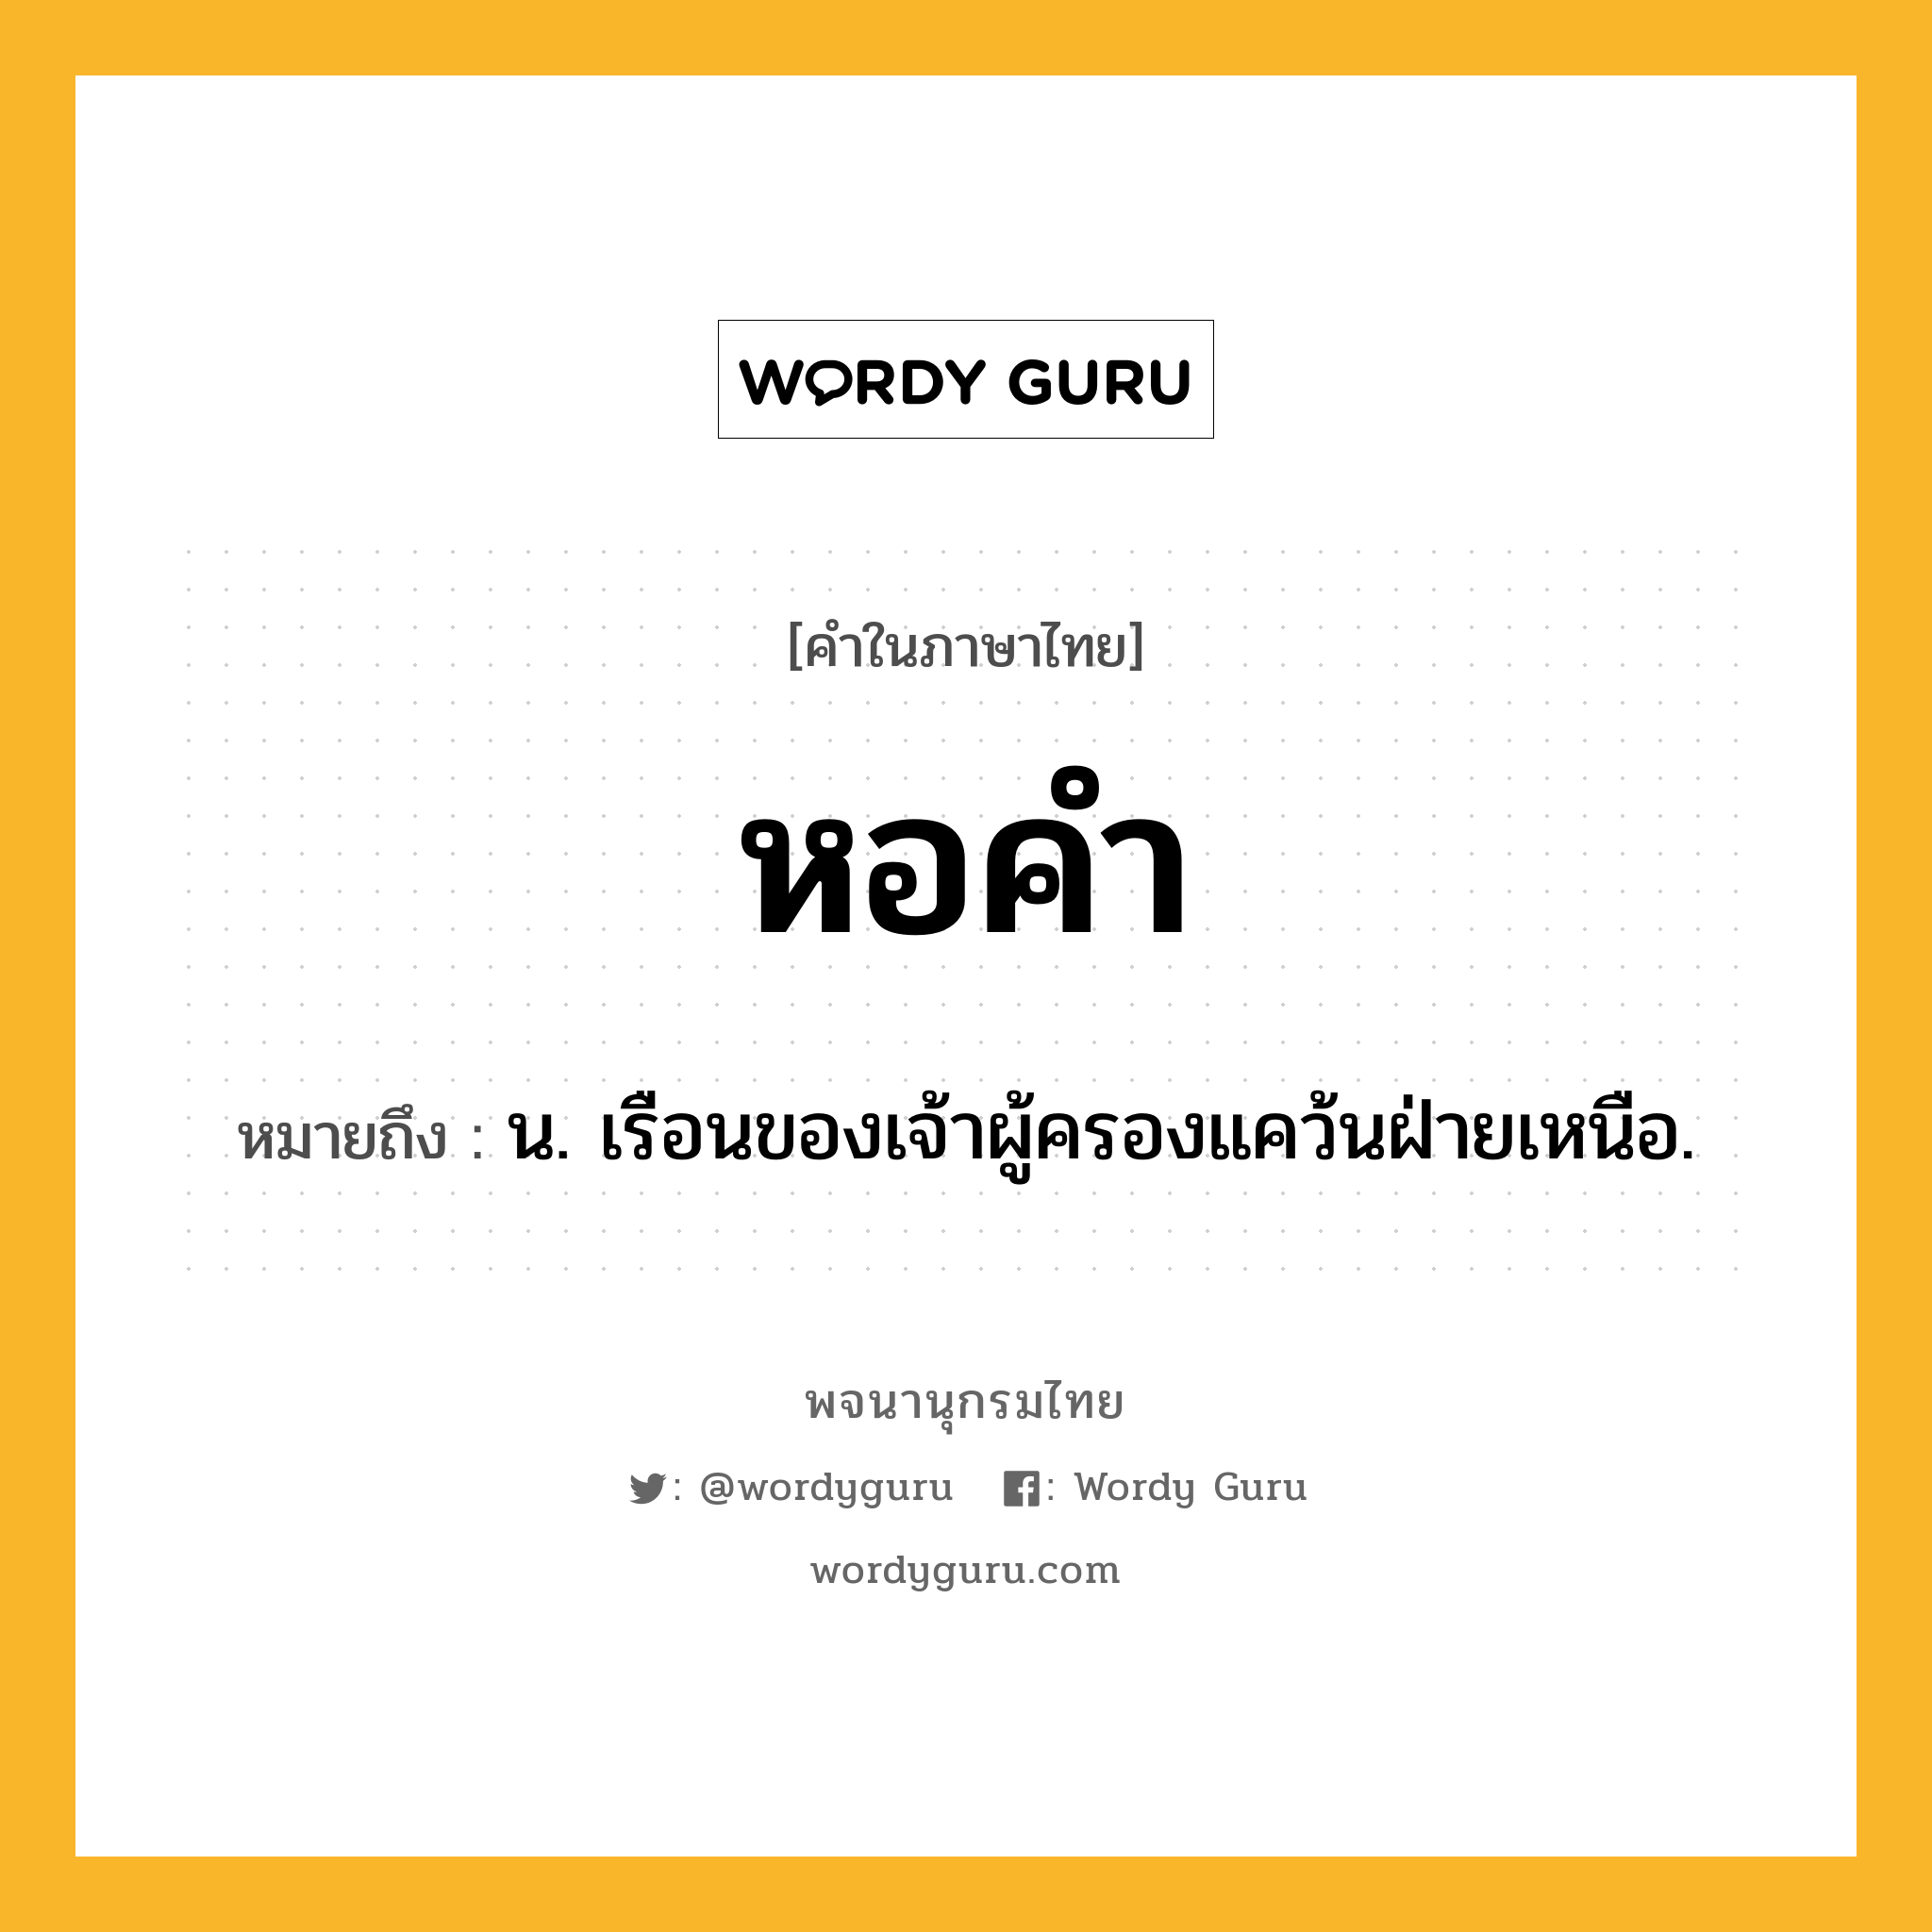 หอคำ หมายถึงอะไร?, คำในภาษาไทย หอคำ หมายถึง น. เรือนของเจ้าผู้ครองแคว้นฝ่ายเหนือ.